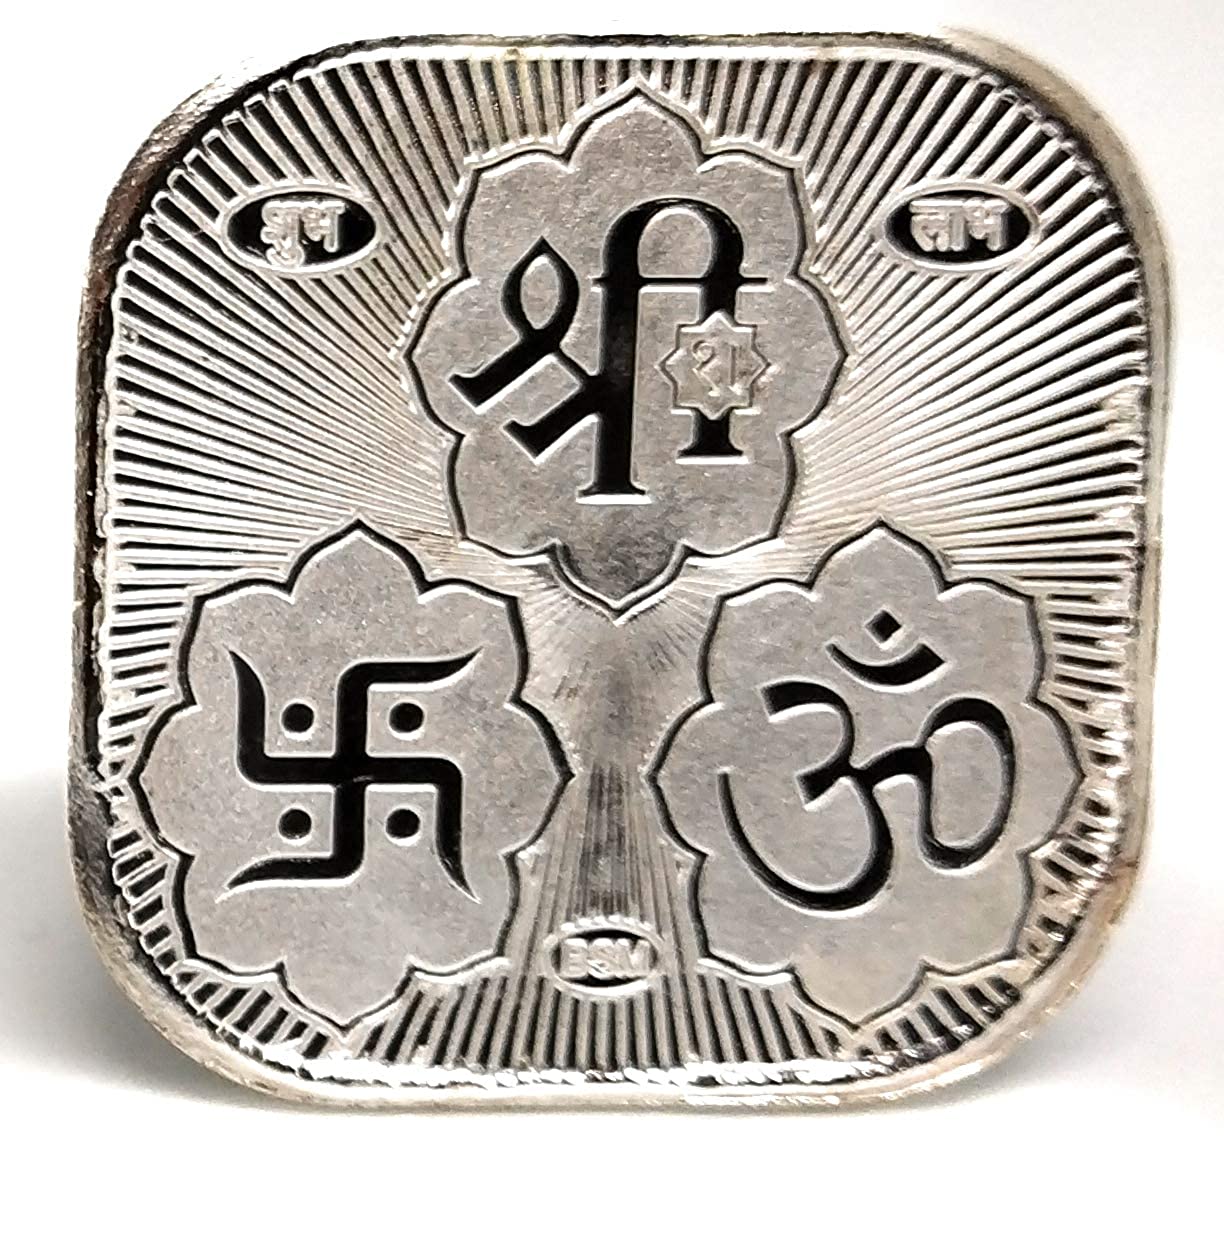 20 gram silver coin